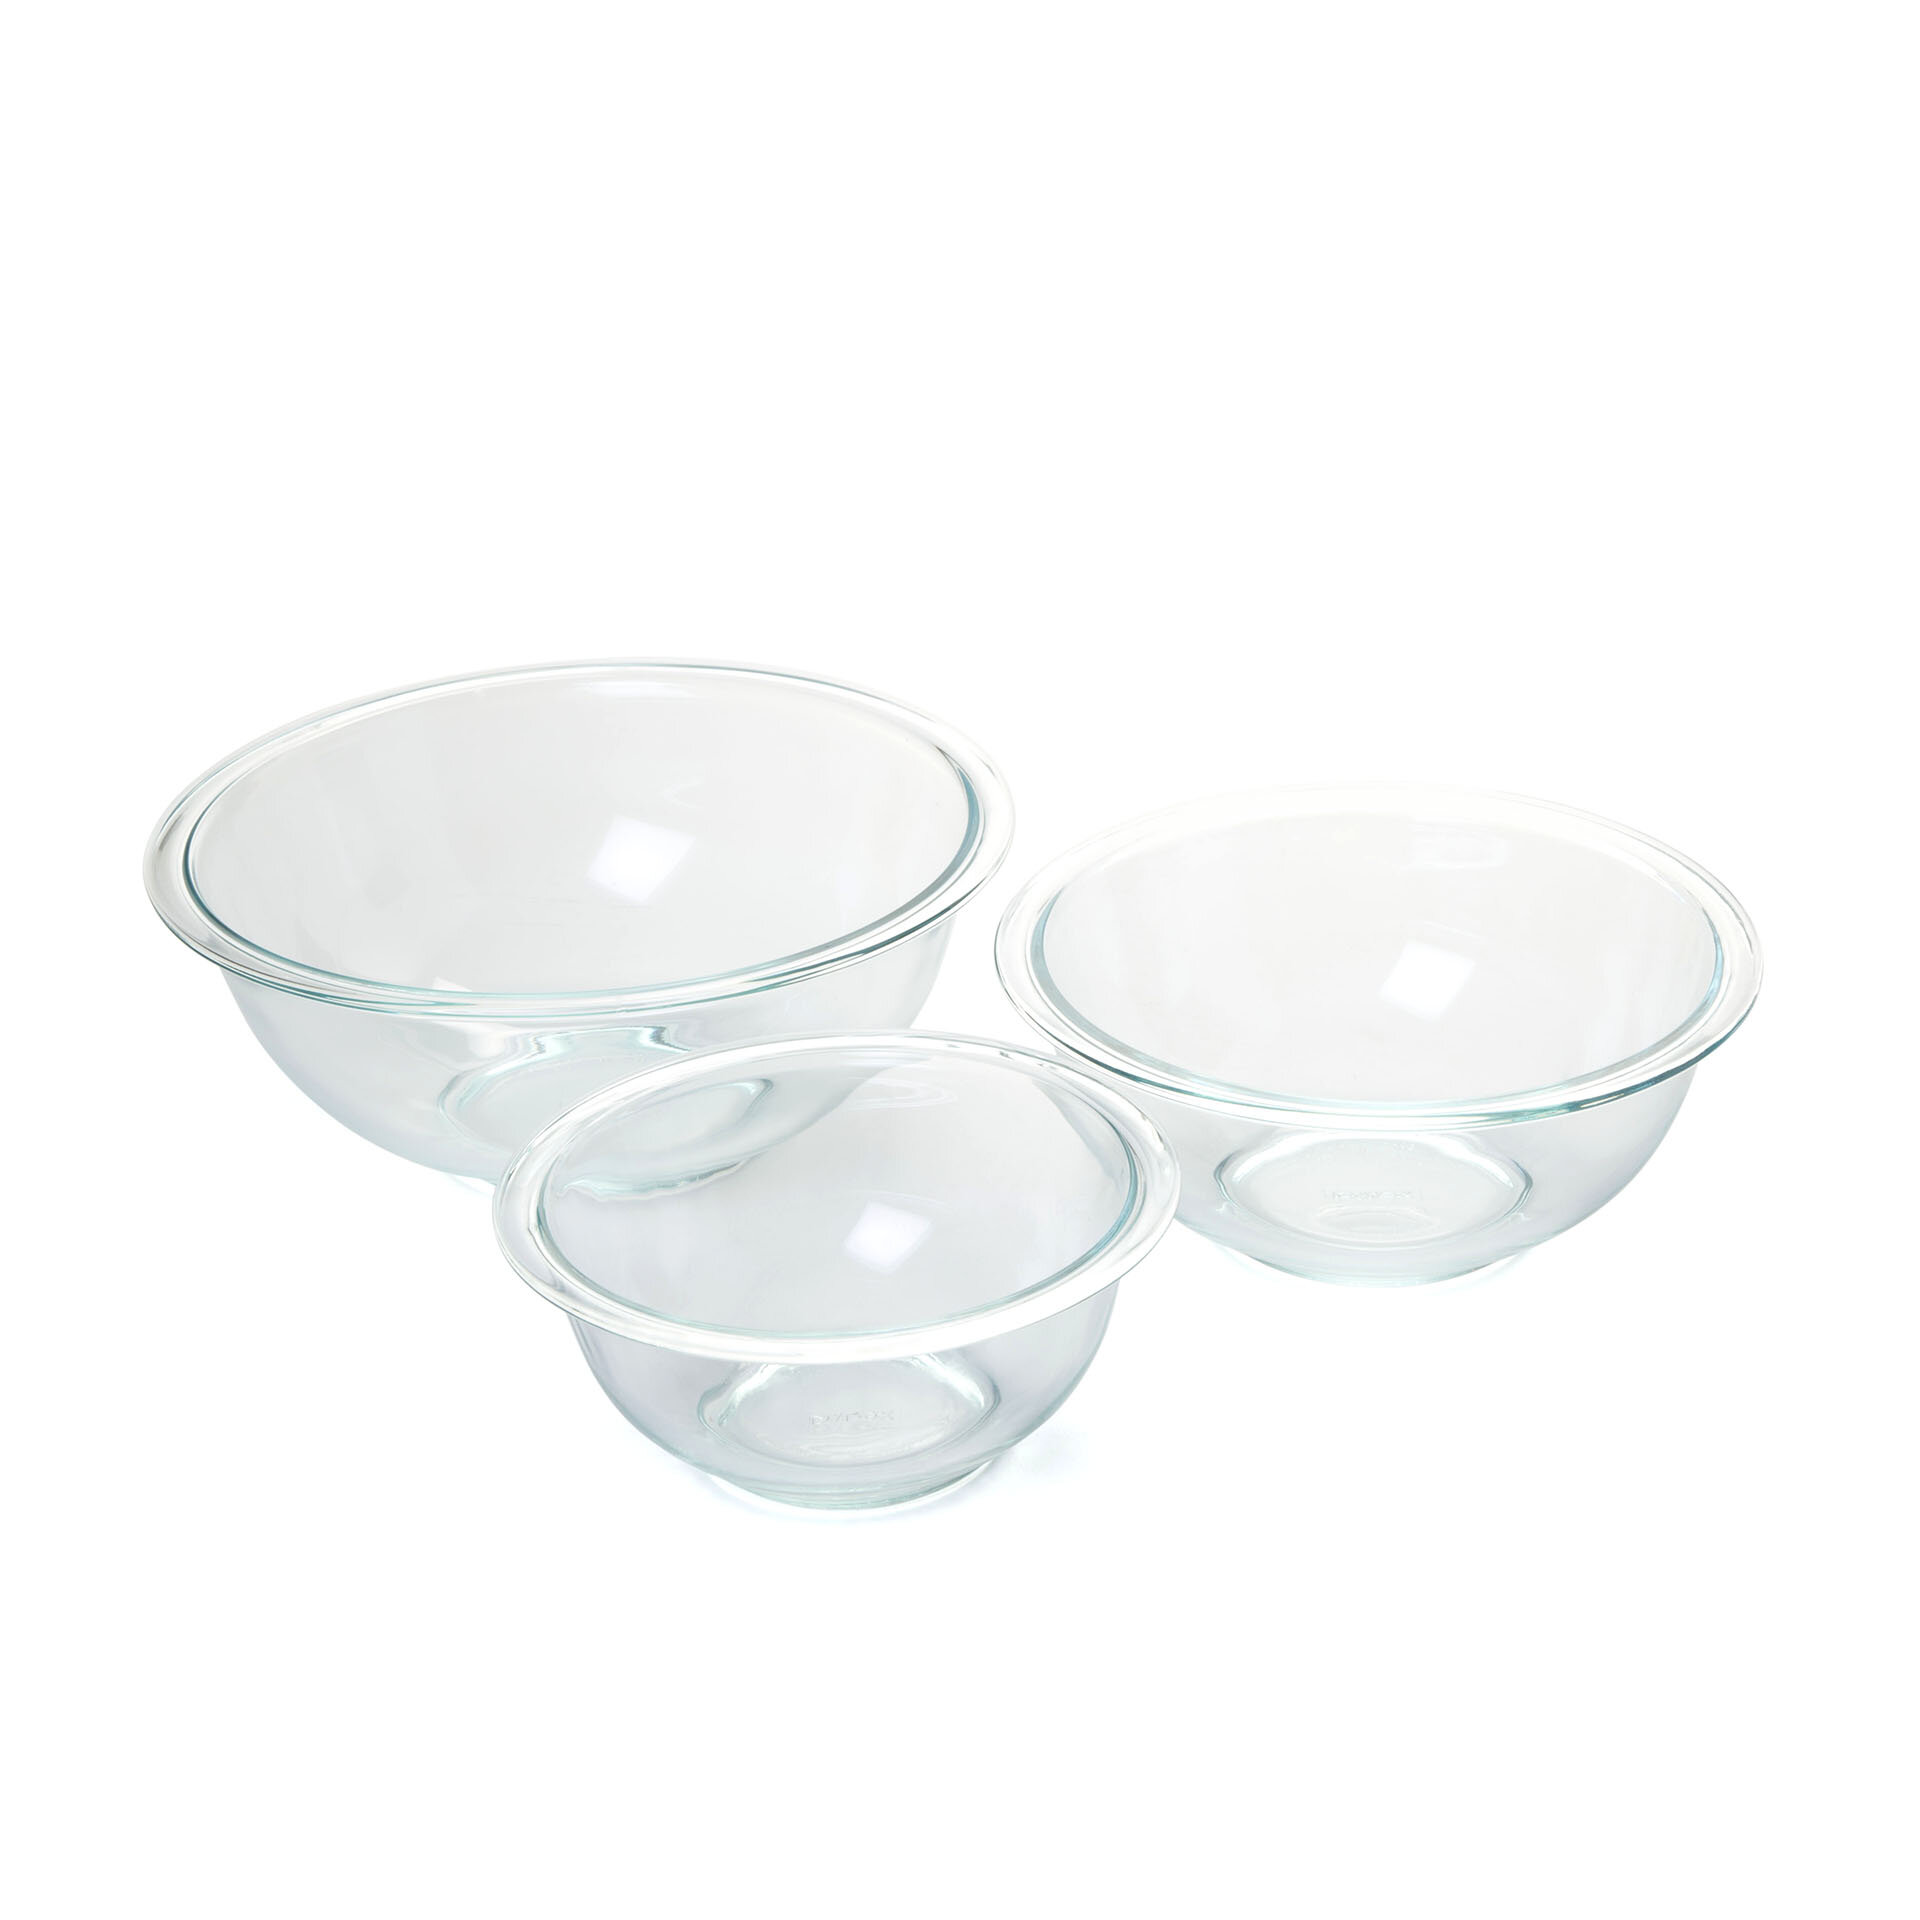 8 pc PYREX Clear SCULPTURED Glass Mixing Bowl Set 4.5 Qt.10 3 Cup BLUE Lids 6 